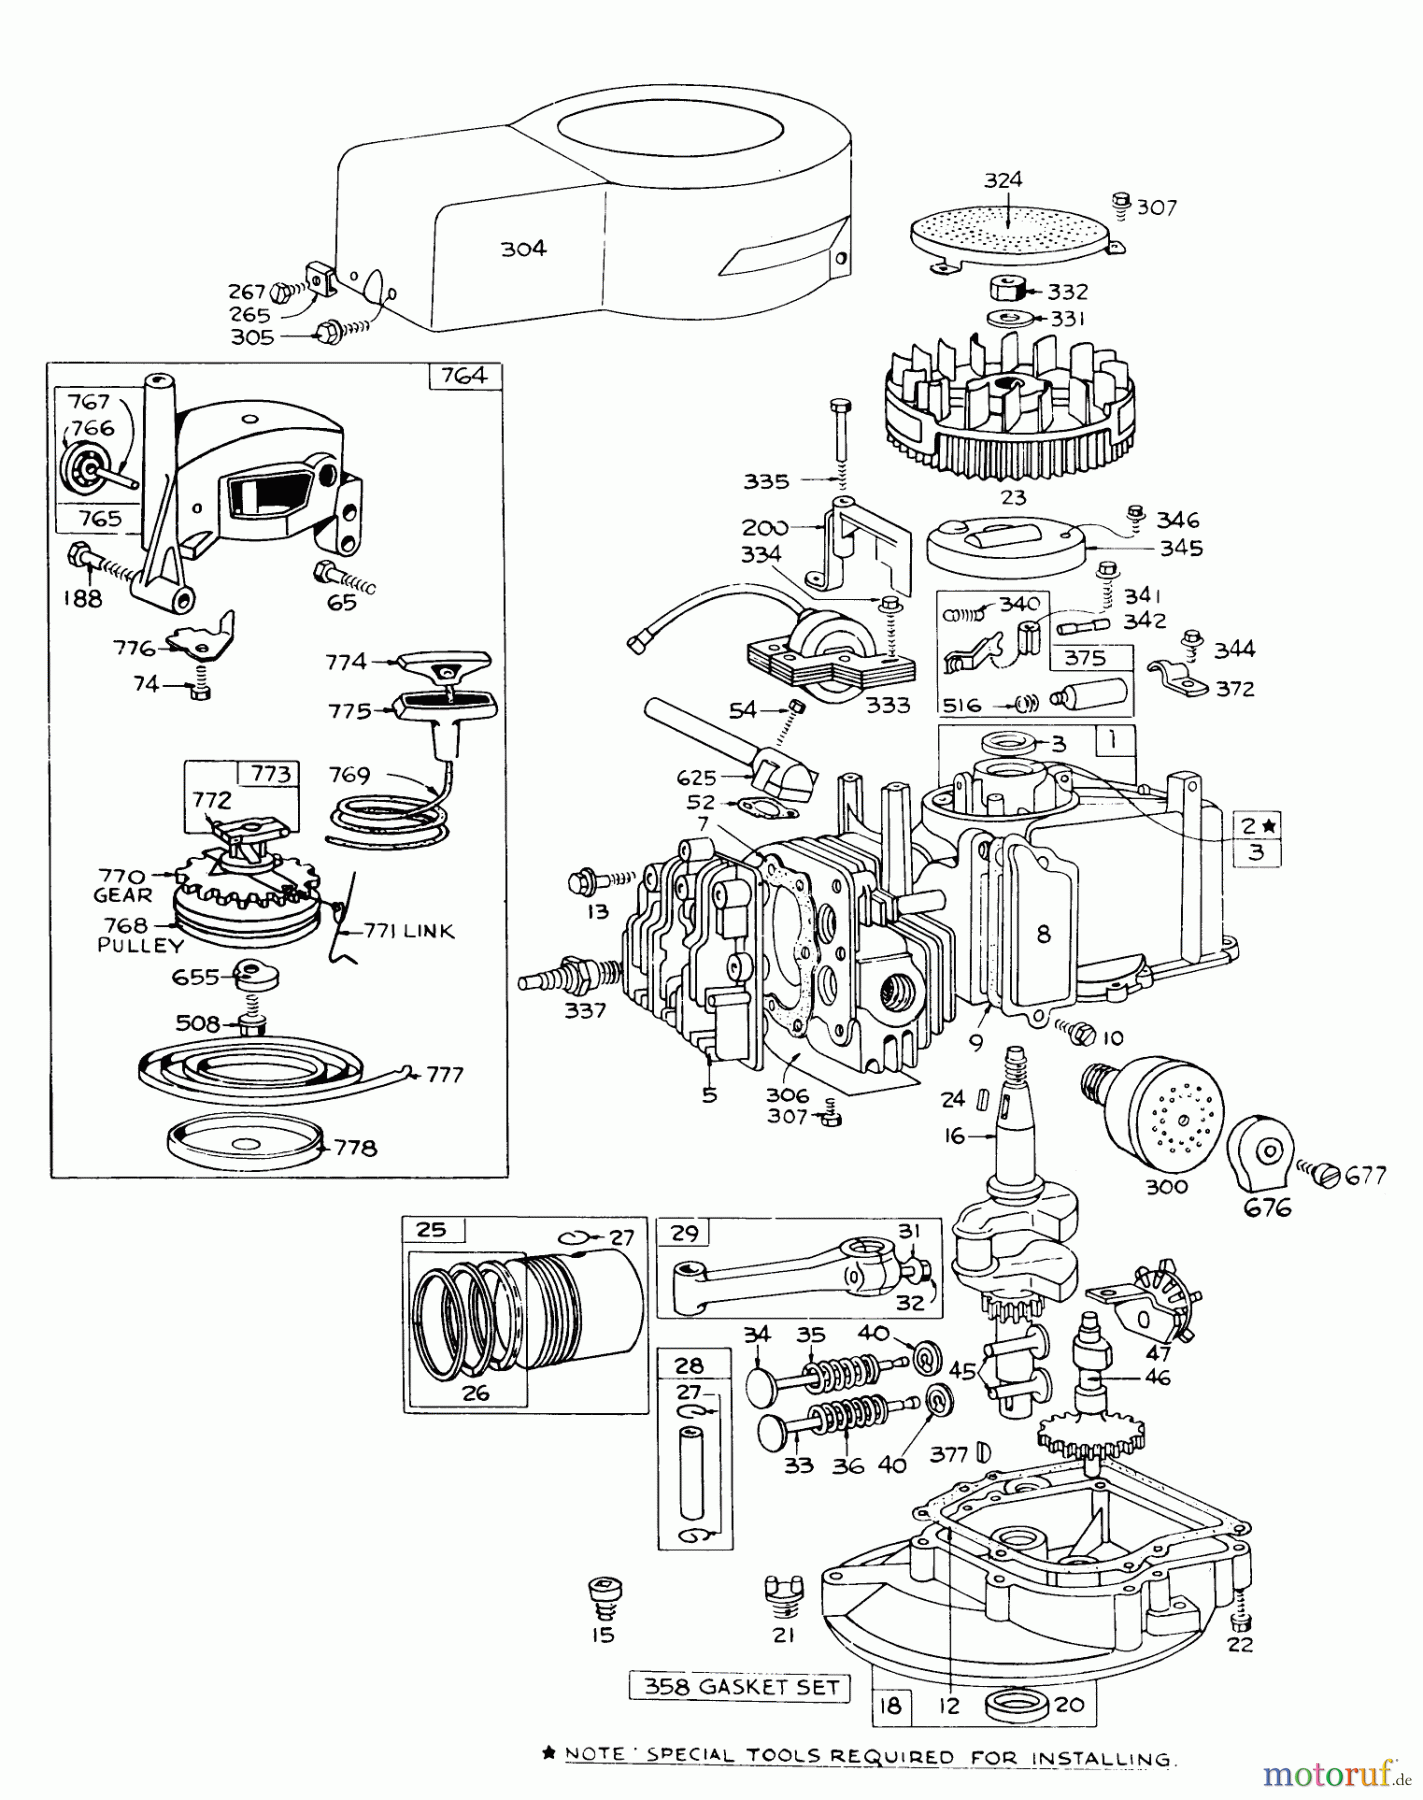  Toro Neu Mowers, Walk-Behind Seite 1 16073 - Toro Whirlwind Lawnmower, 1976 (6000001-6999999) ENGINE BRIGGS & STRATTON MODEL 92508-0904-01 FOR 19